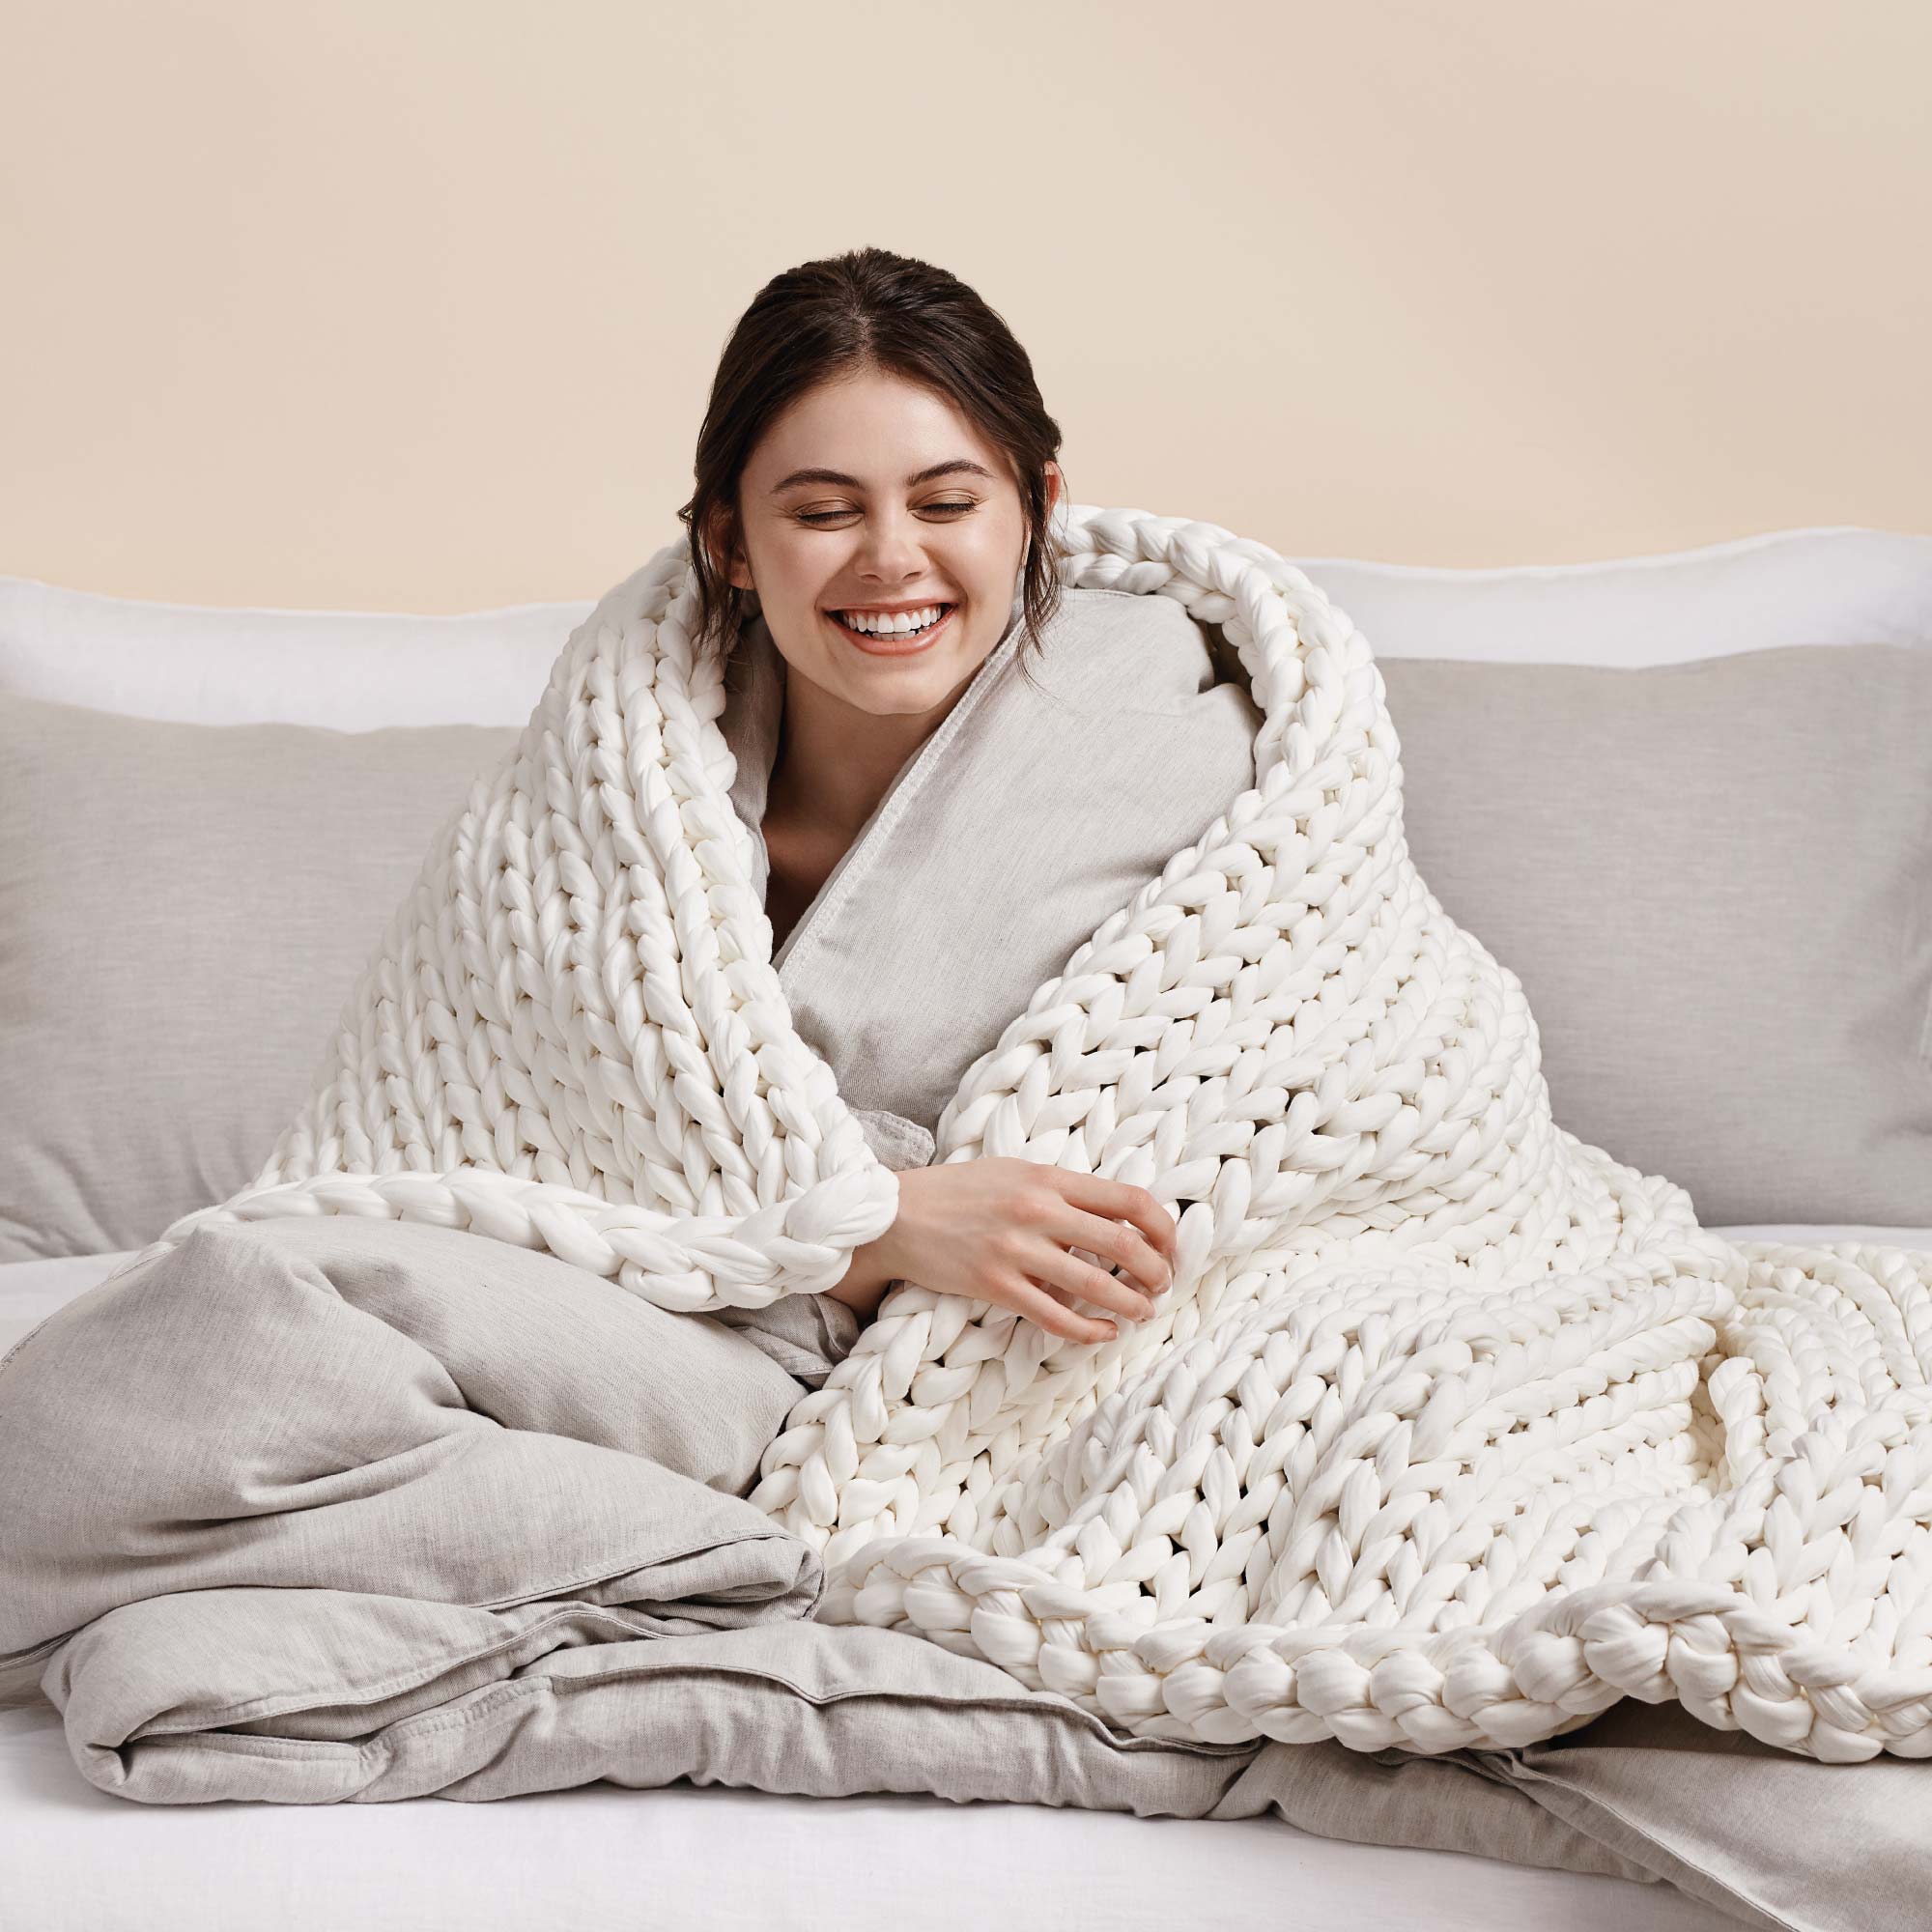 weighted blanket vs comforter